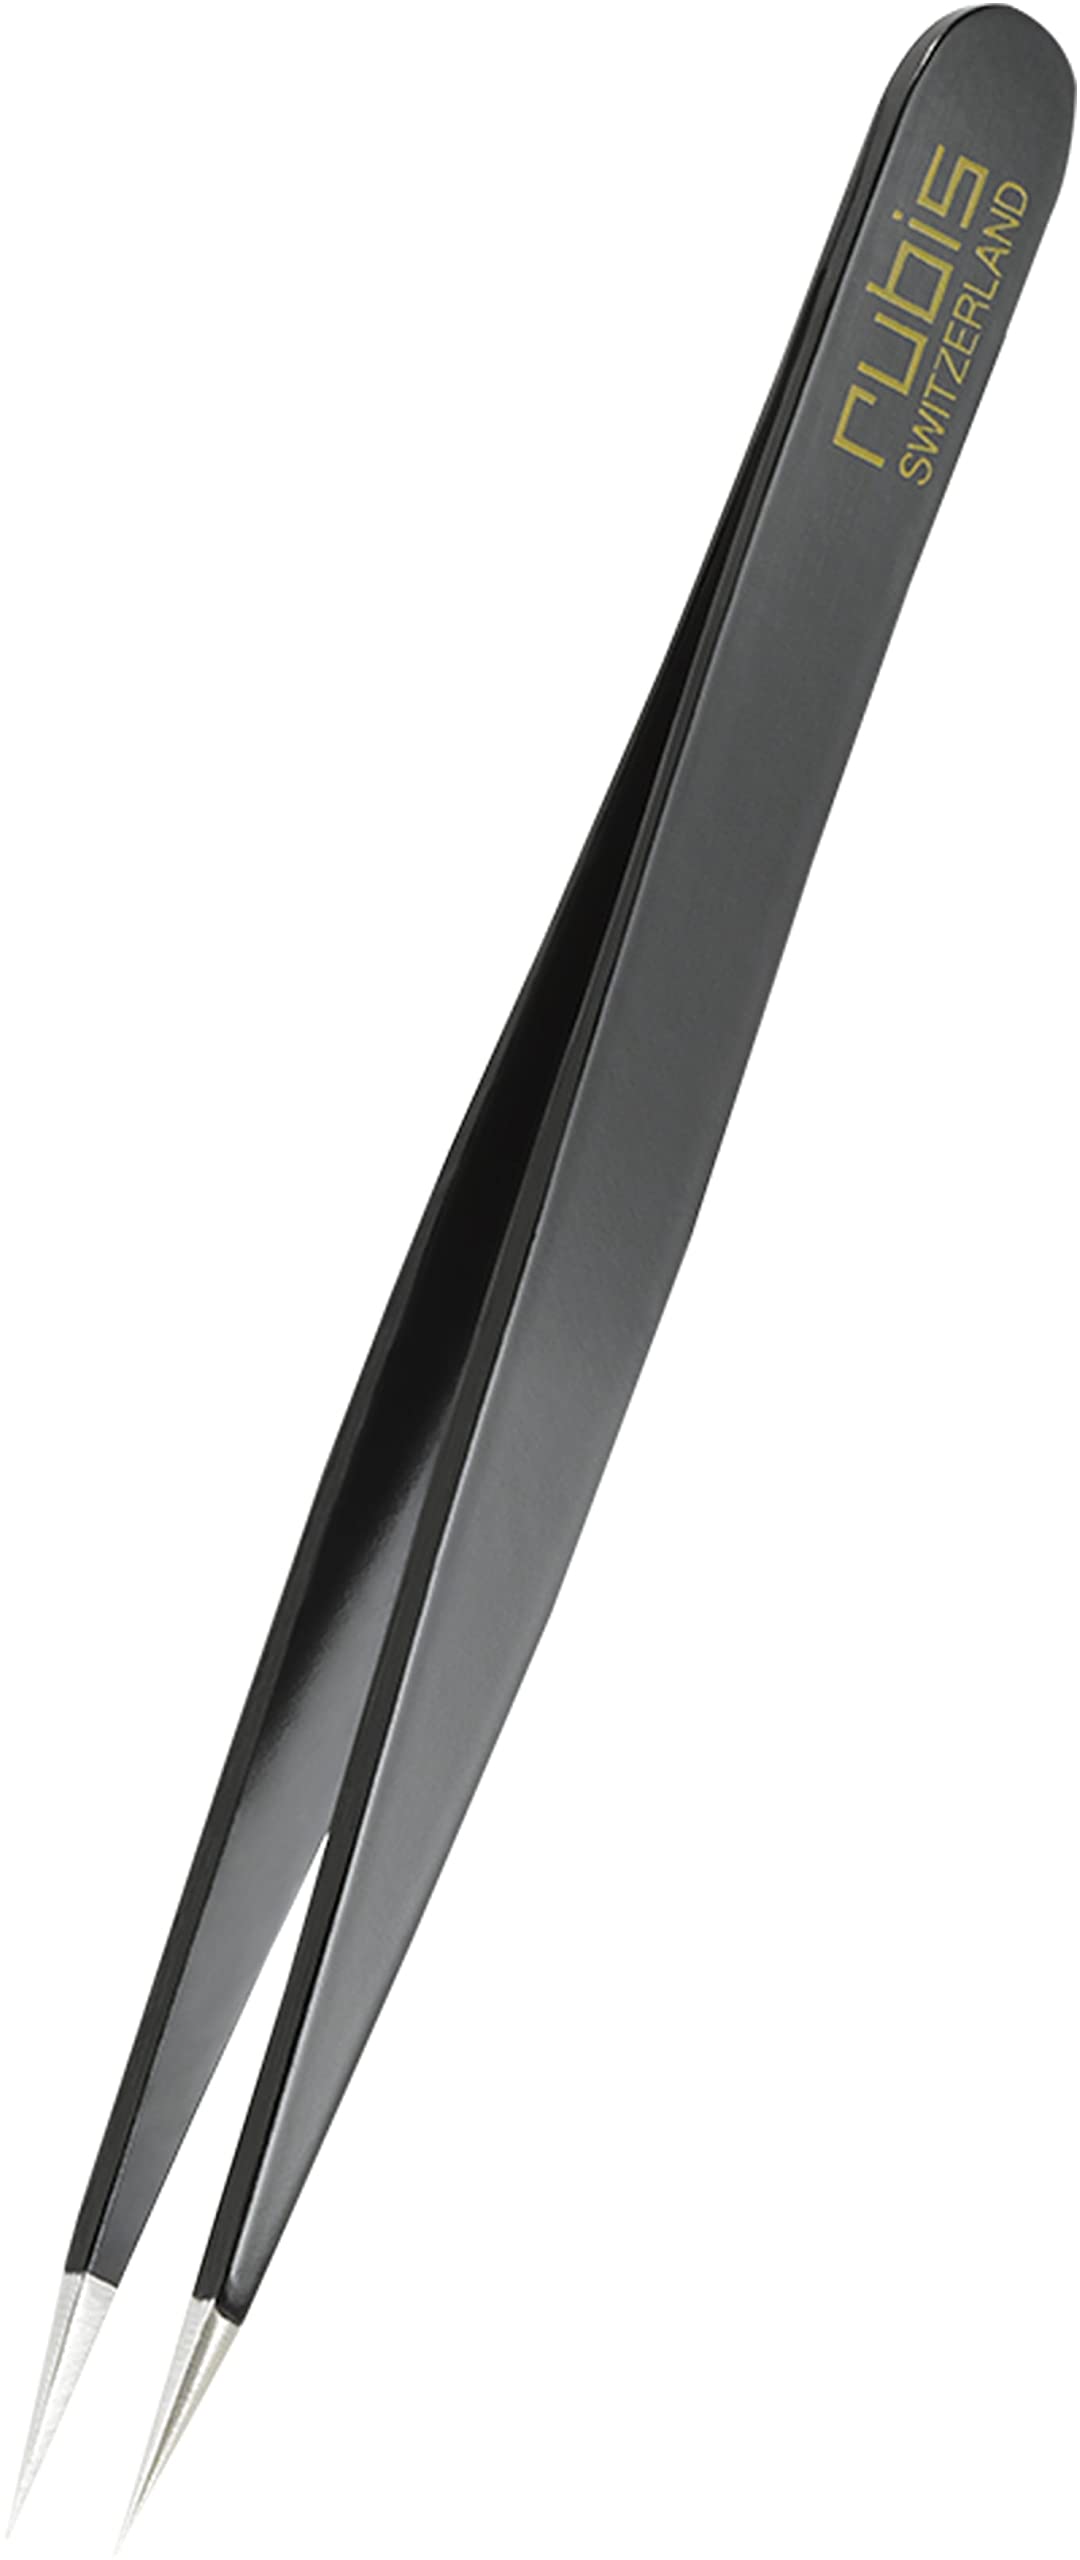 Rubis Splitterpinzette - Spitze Pinzette für Splitter und eingewachsene Haare - Spitzpinzette (Schwarz)